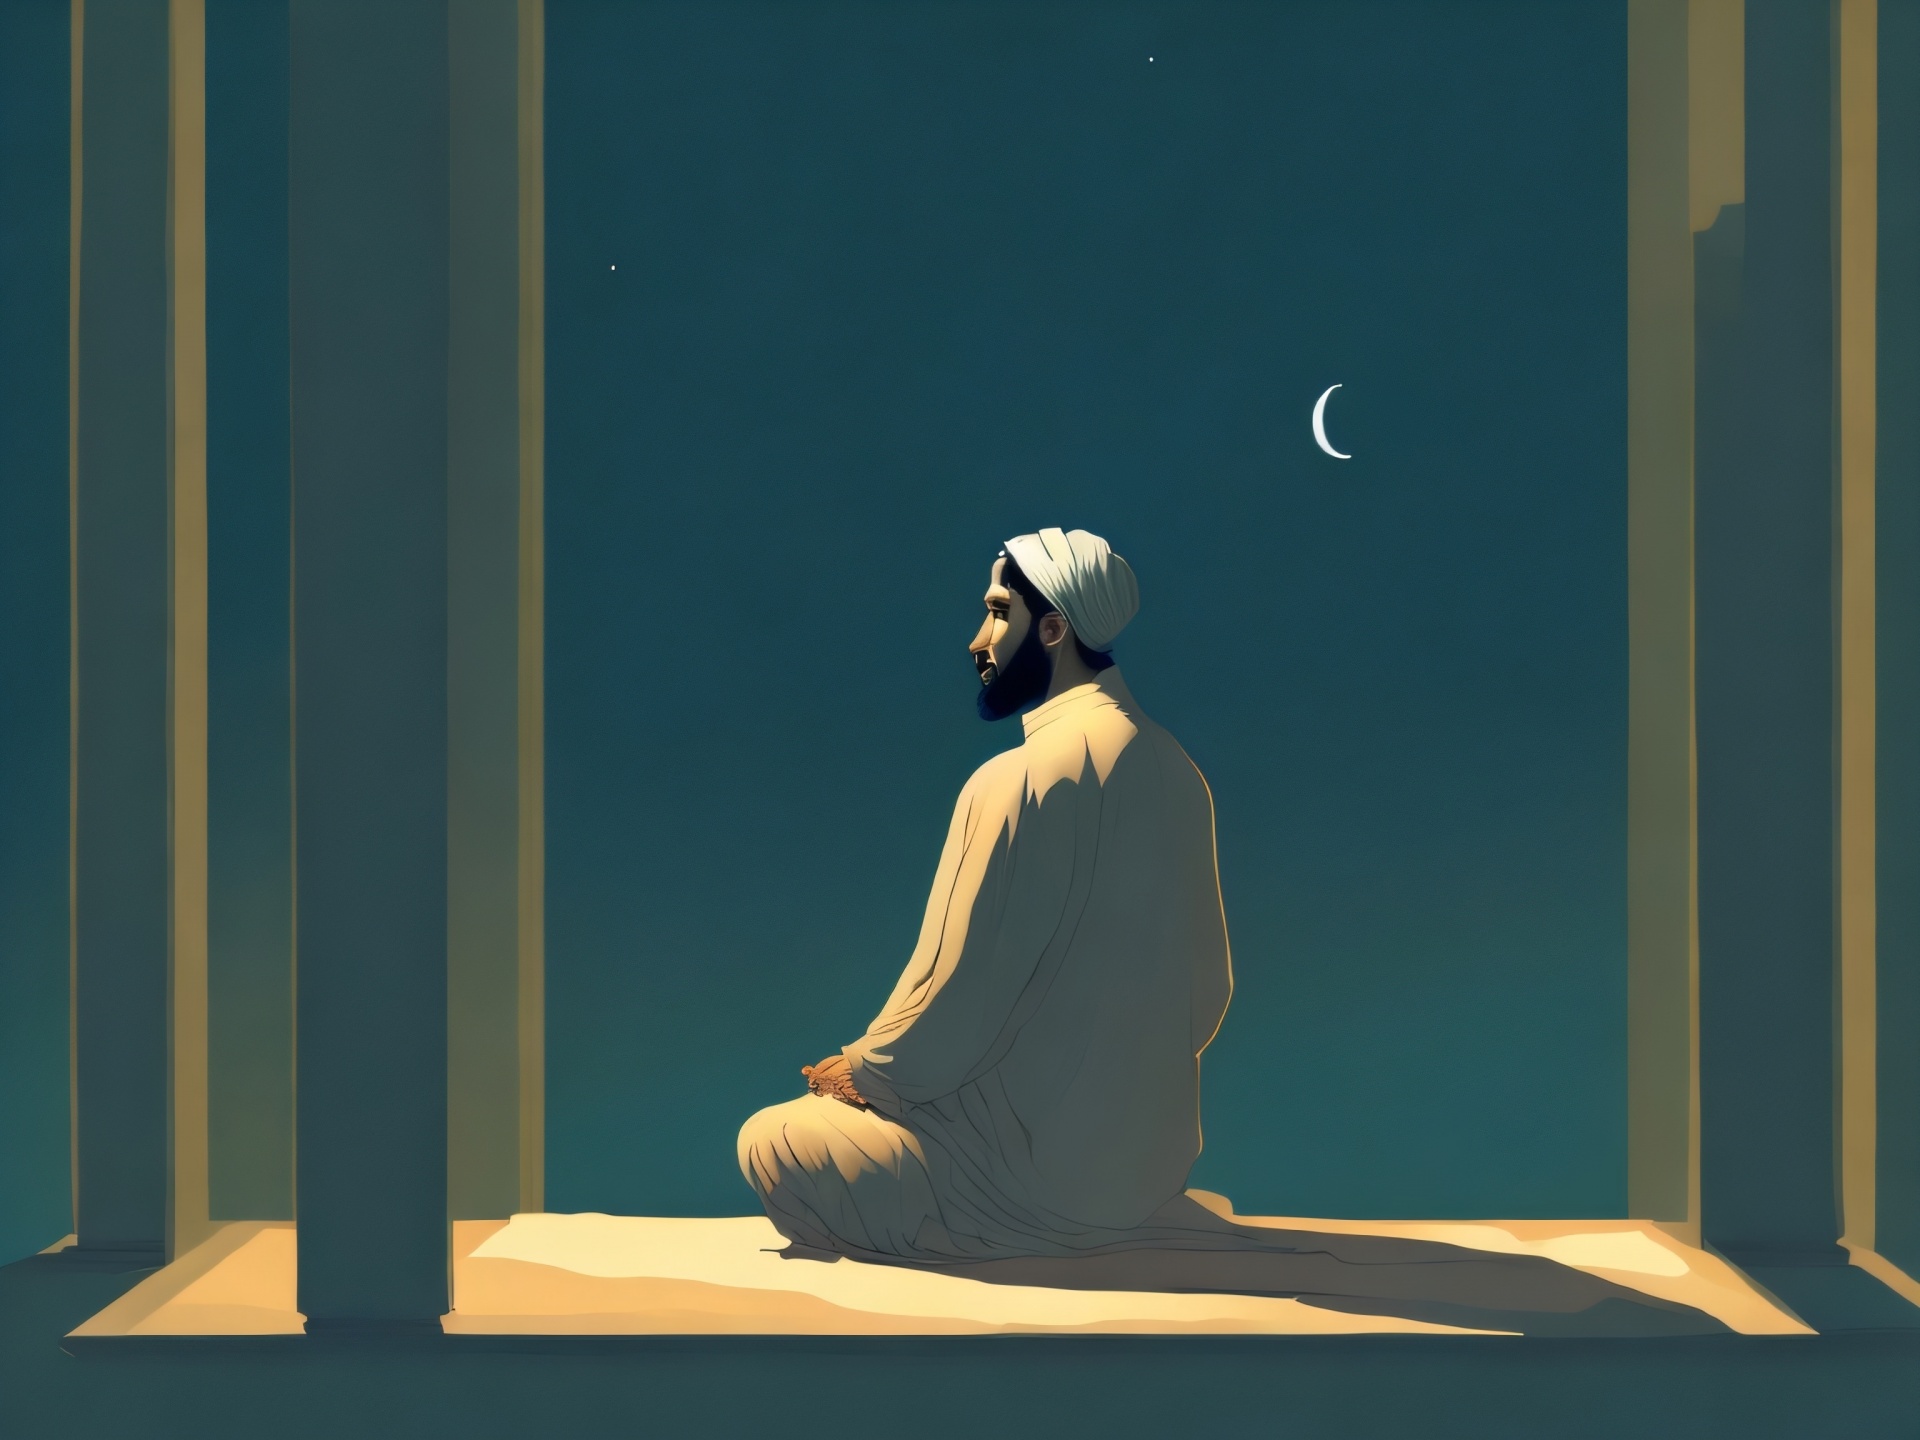 Muslim Man Praying